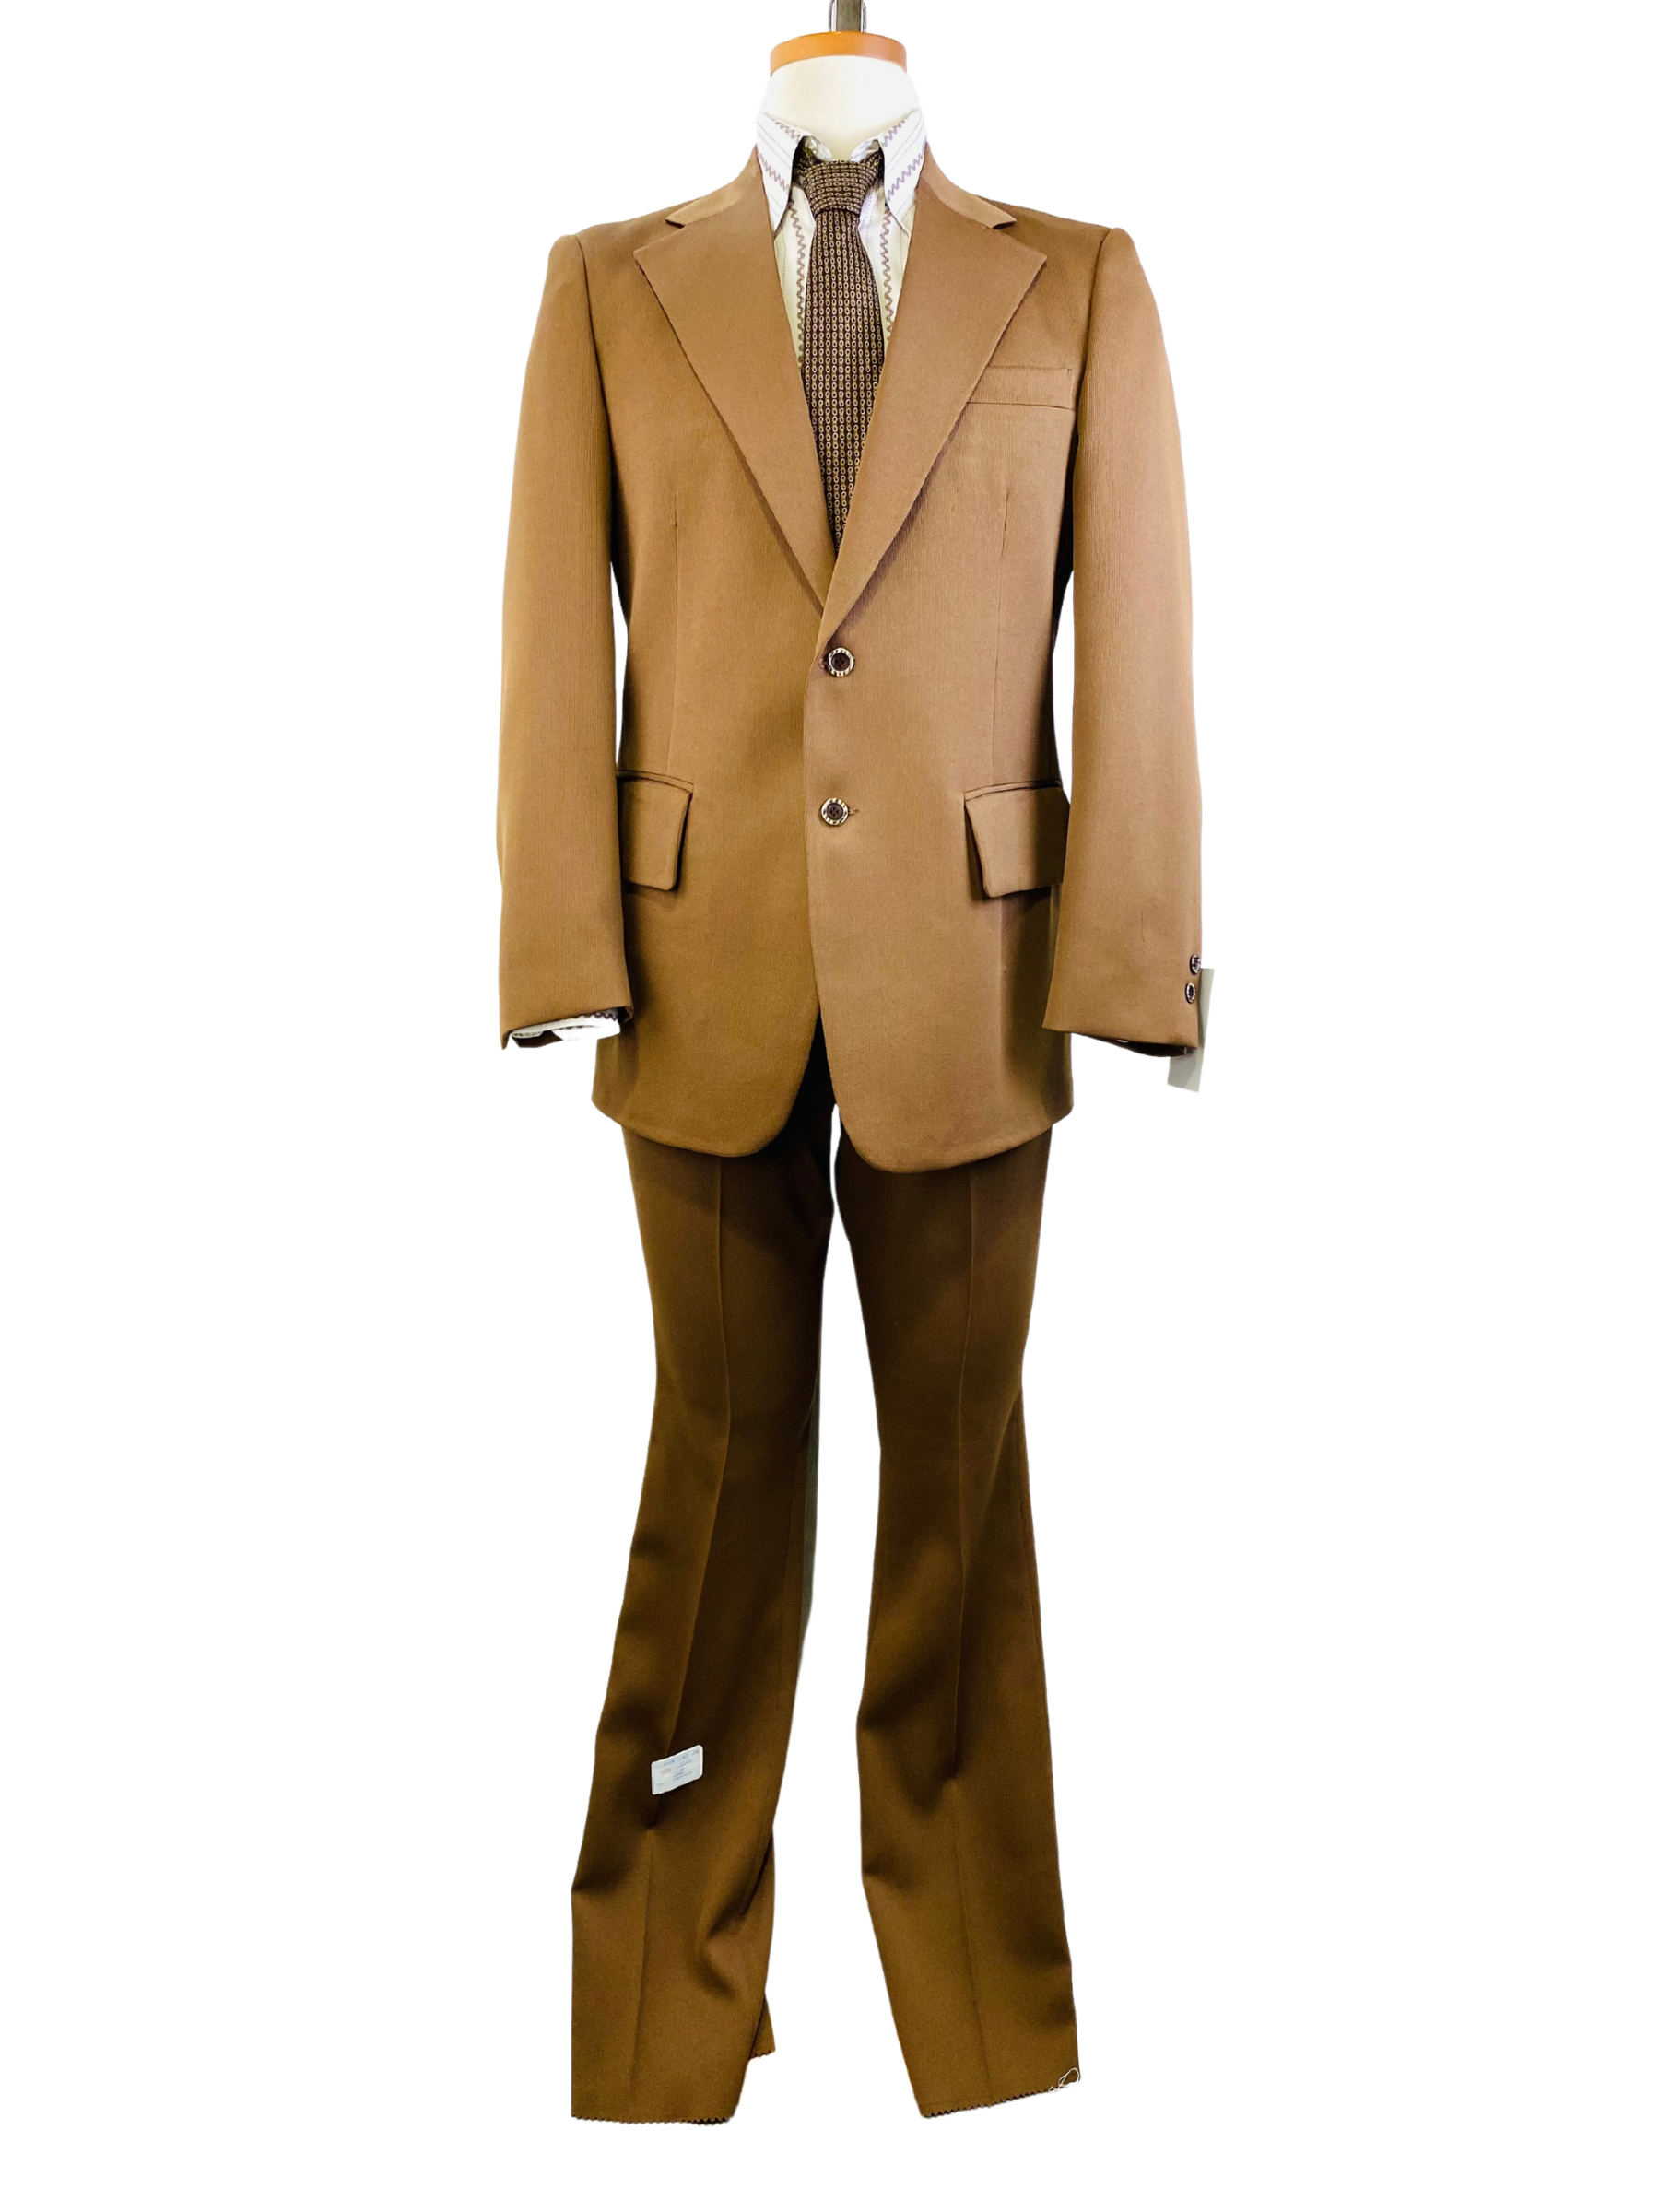 1970s Vintage Deadstock Men's Suit, Brown Solid 2-Piece Poly-Twill Suit, Prestige Clothes, NOS